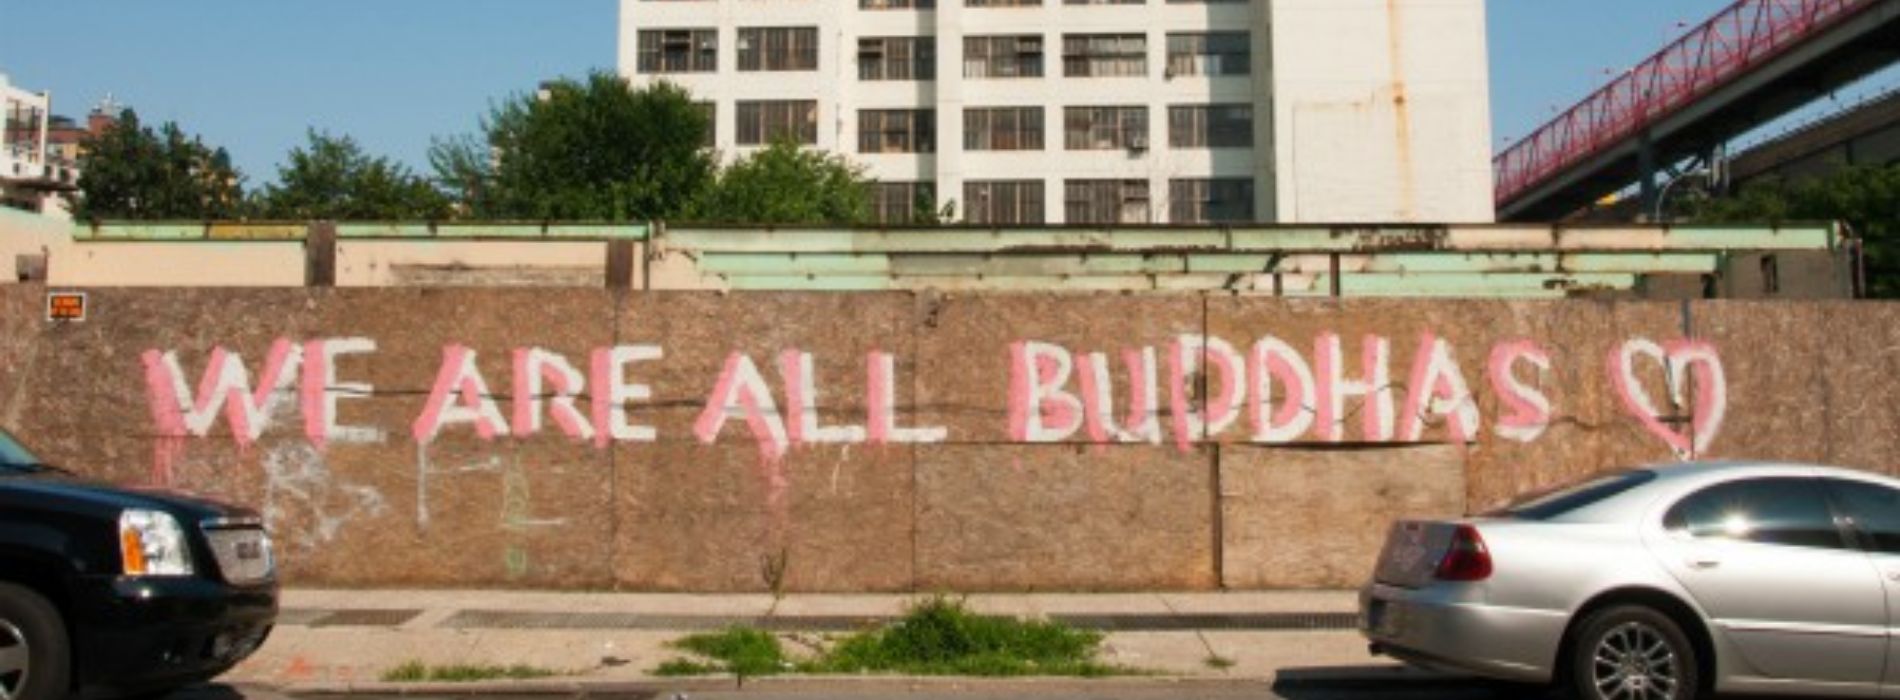 Nous sommes tous des bouddhas